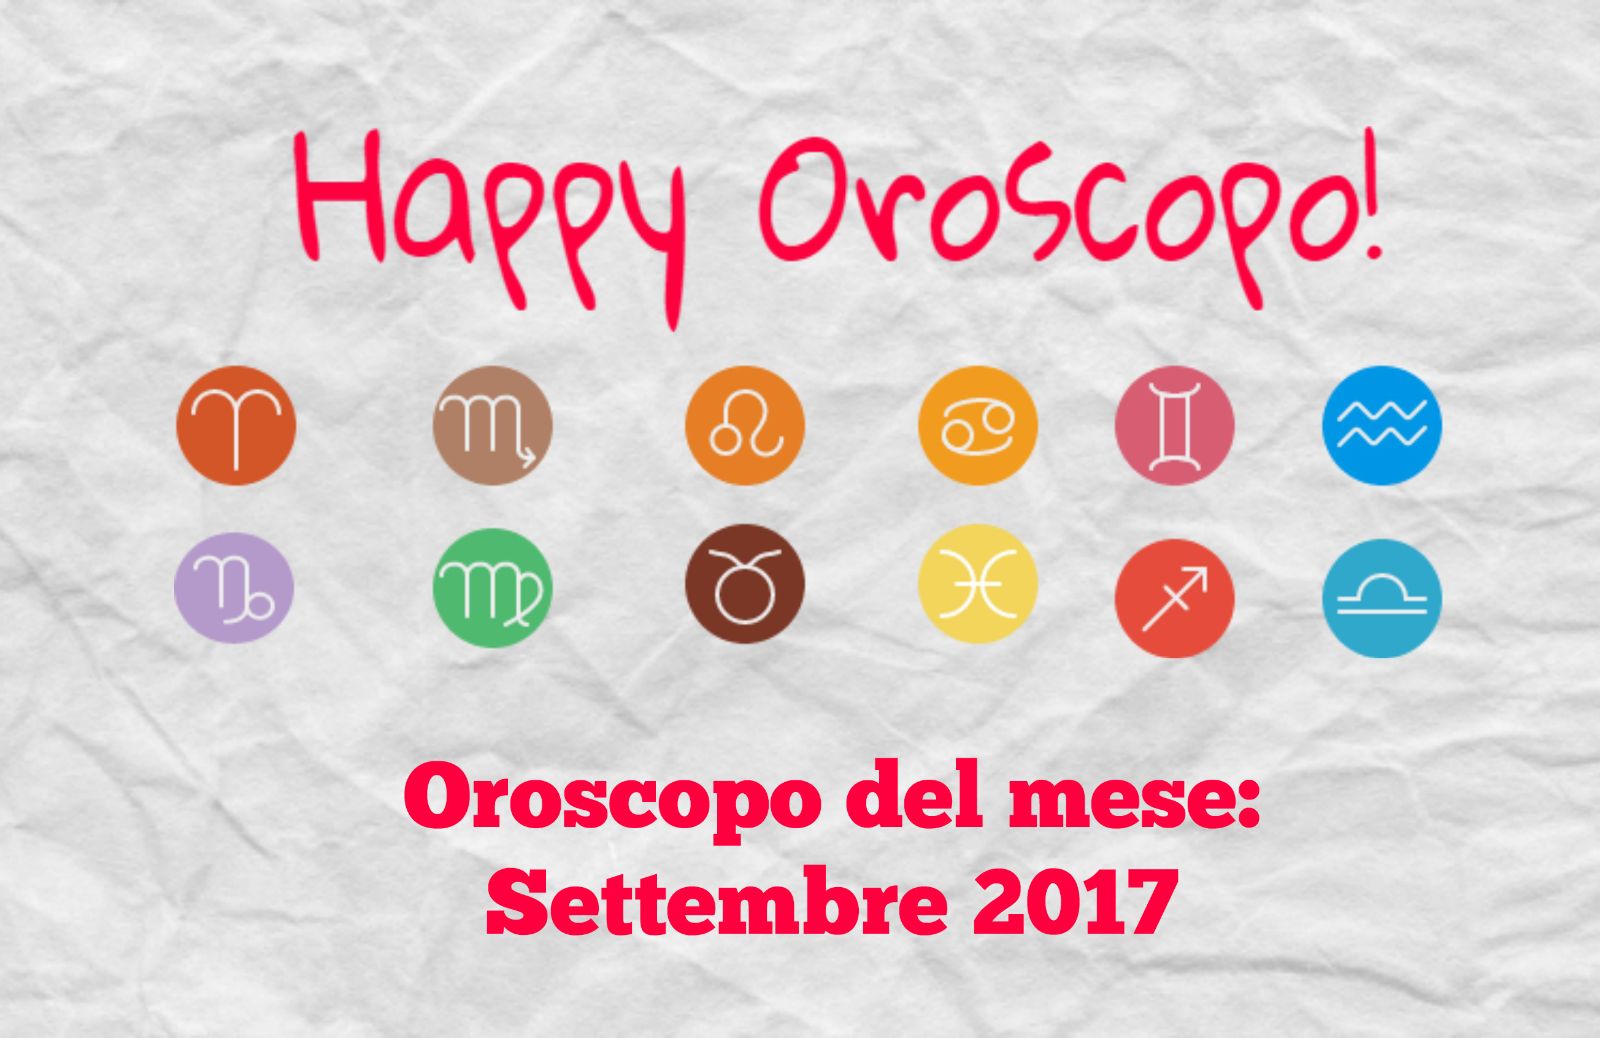 Happy Oroscopo del mese di Ginny: settembre 2017 segno per segno